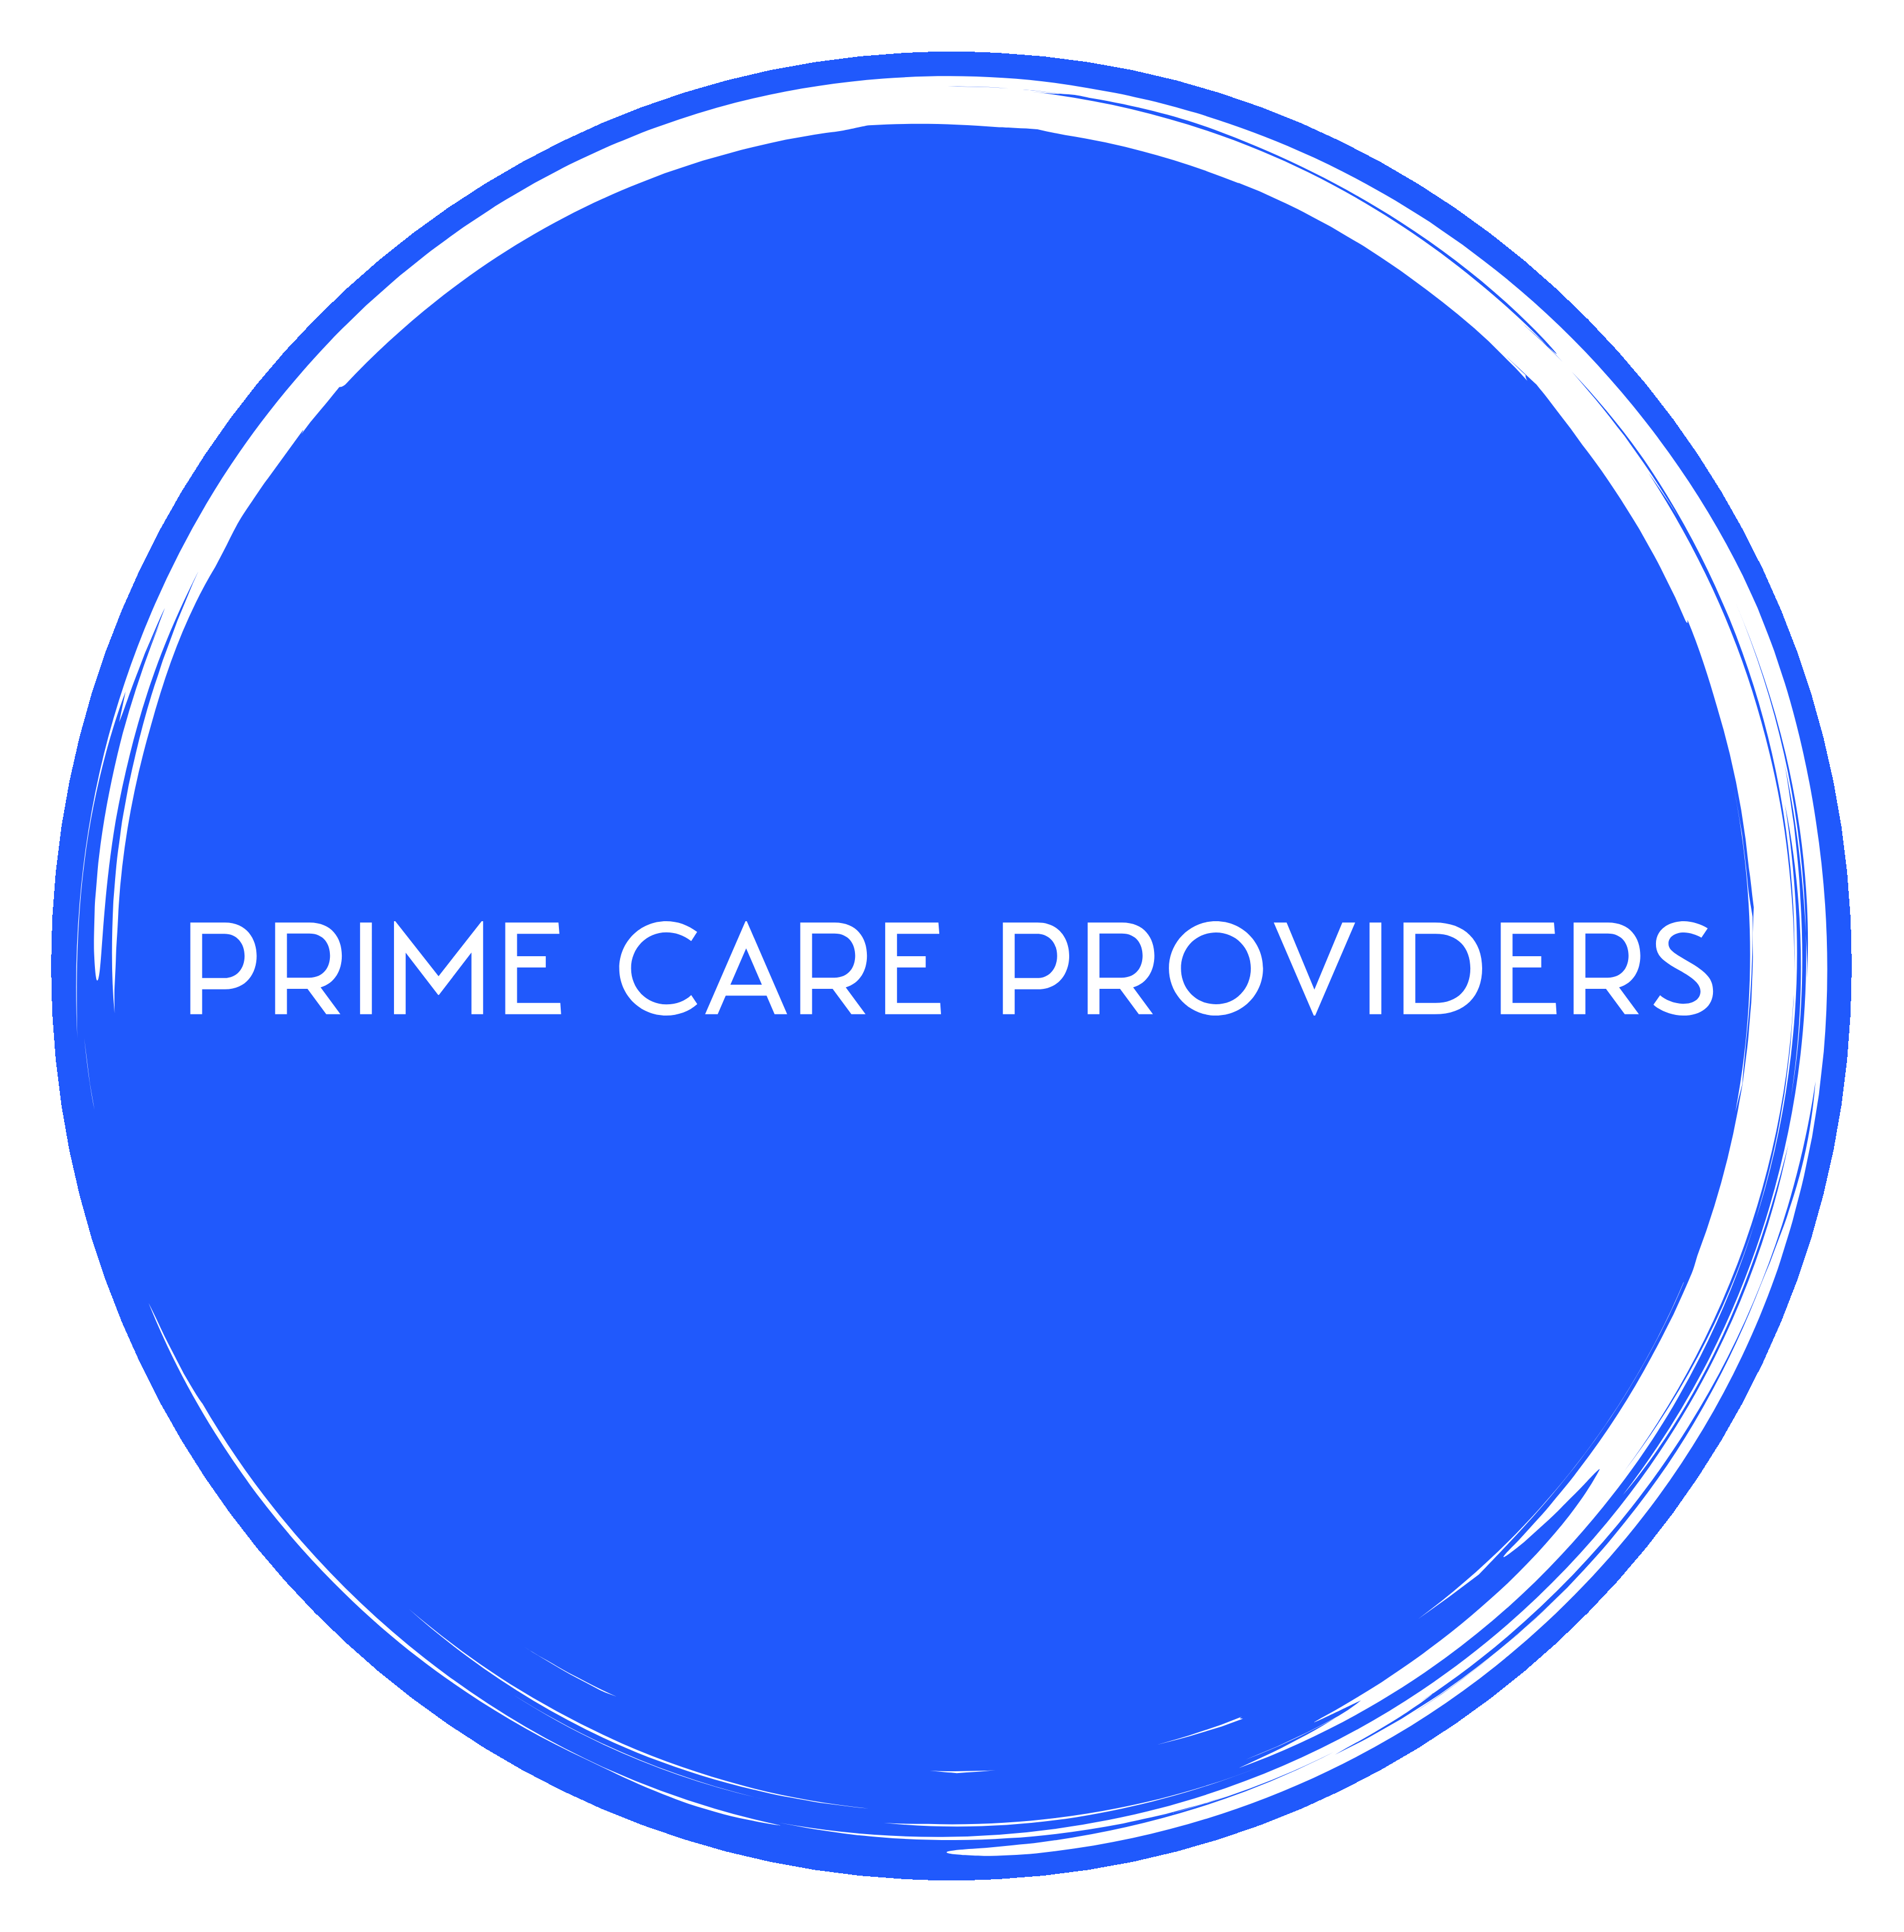 Prime Care Providers